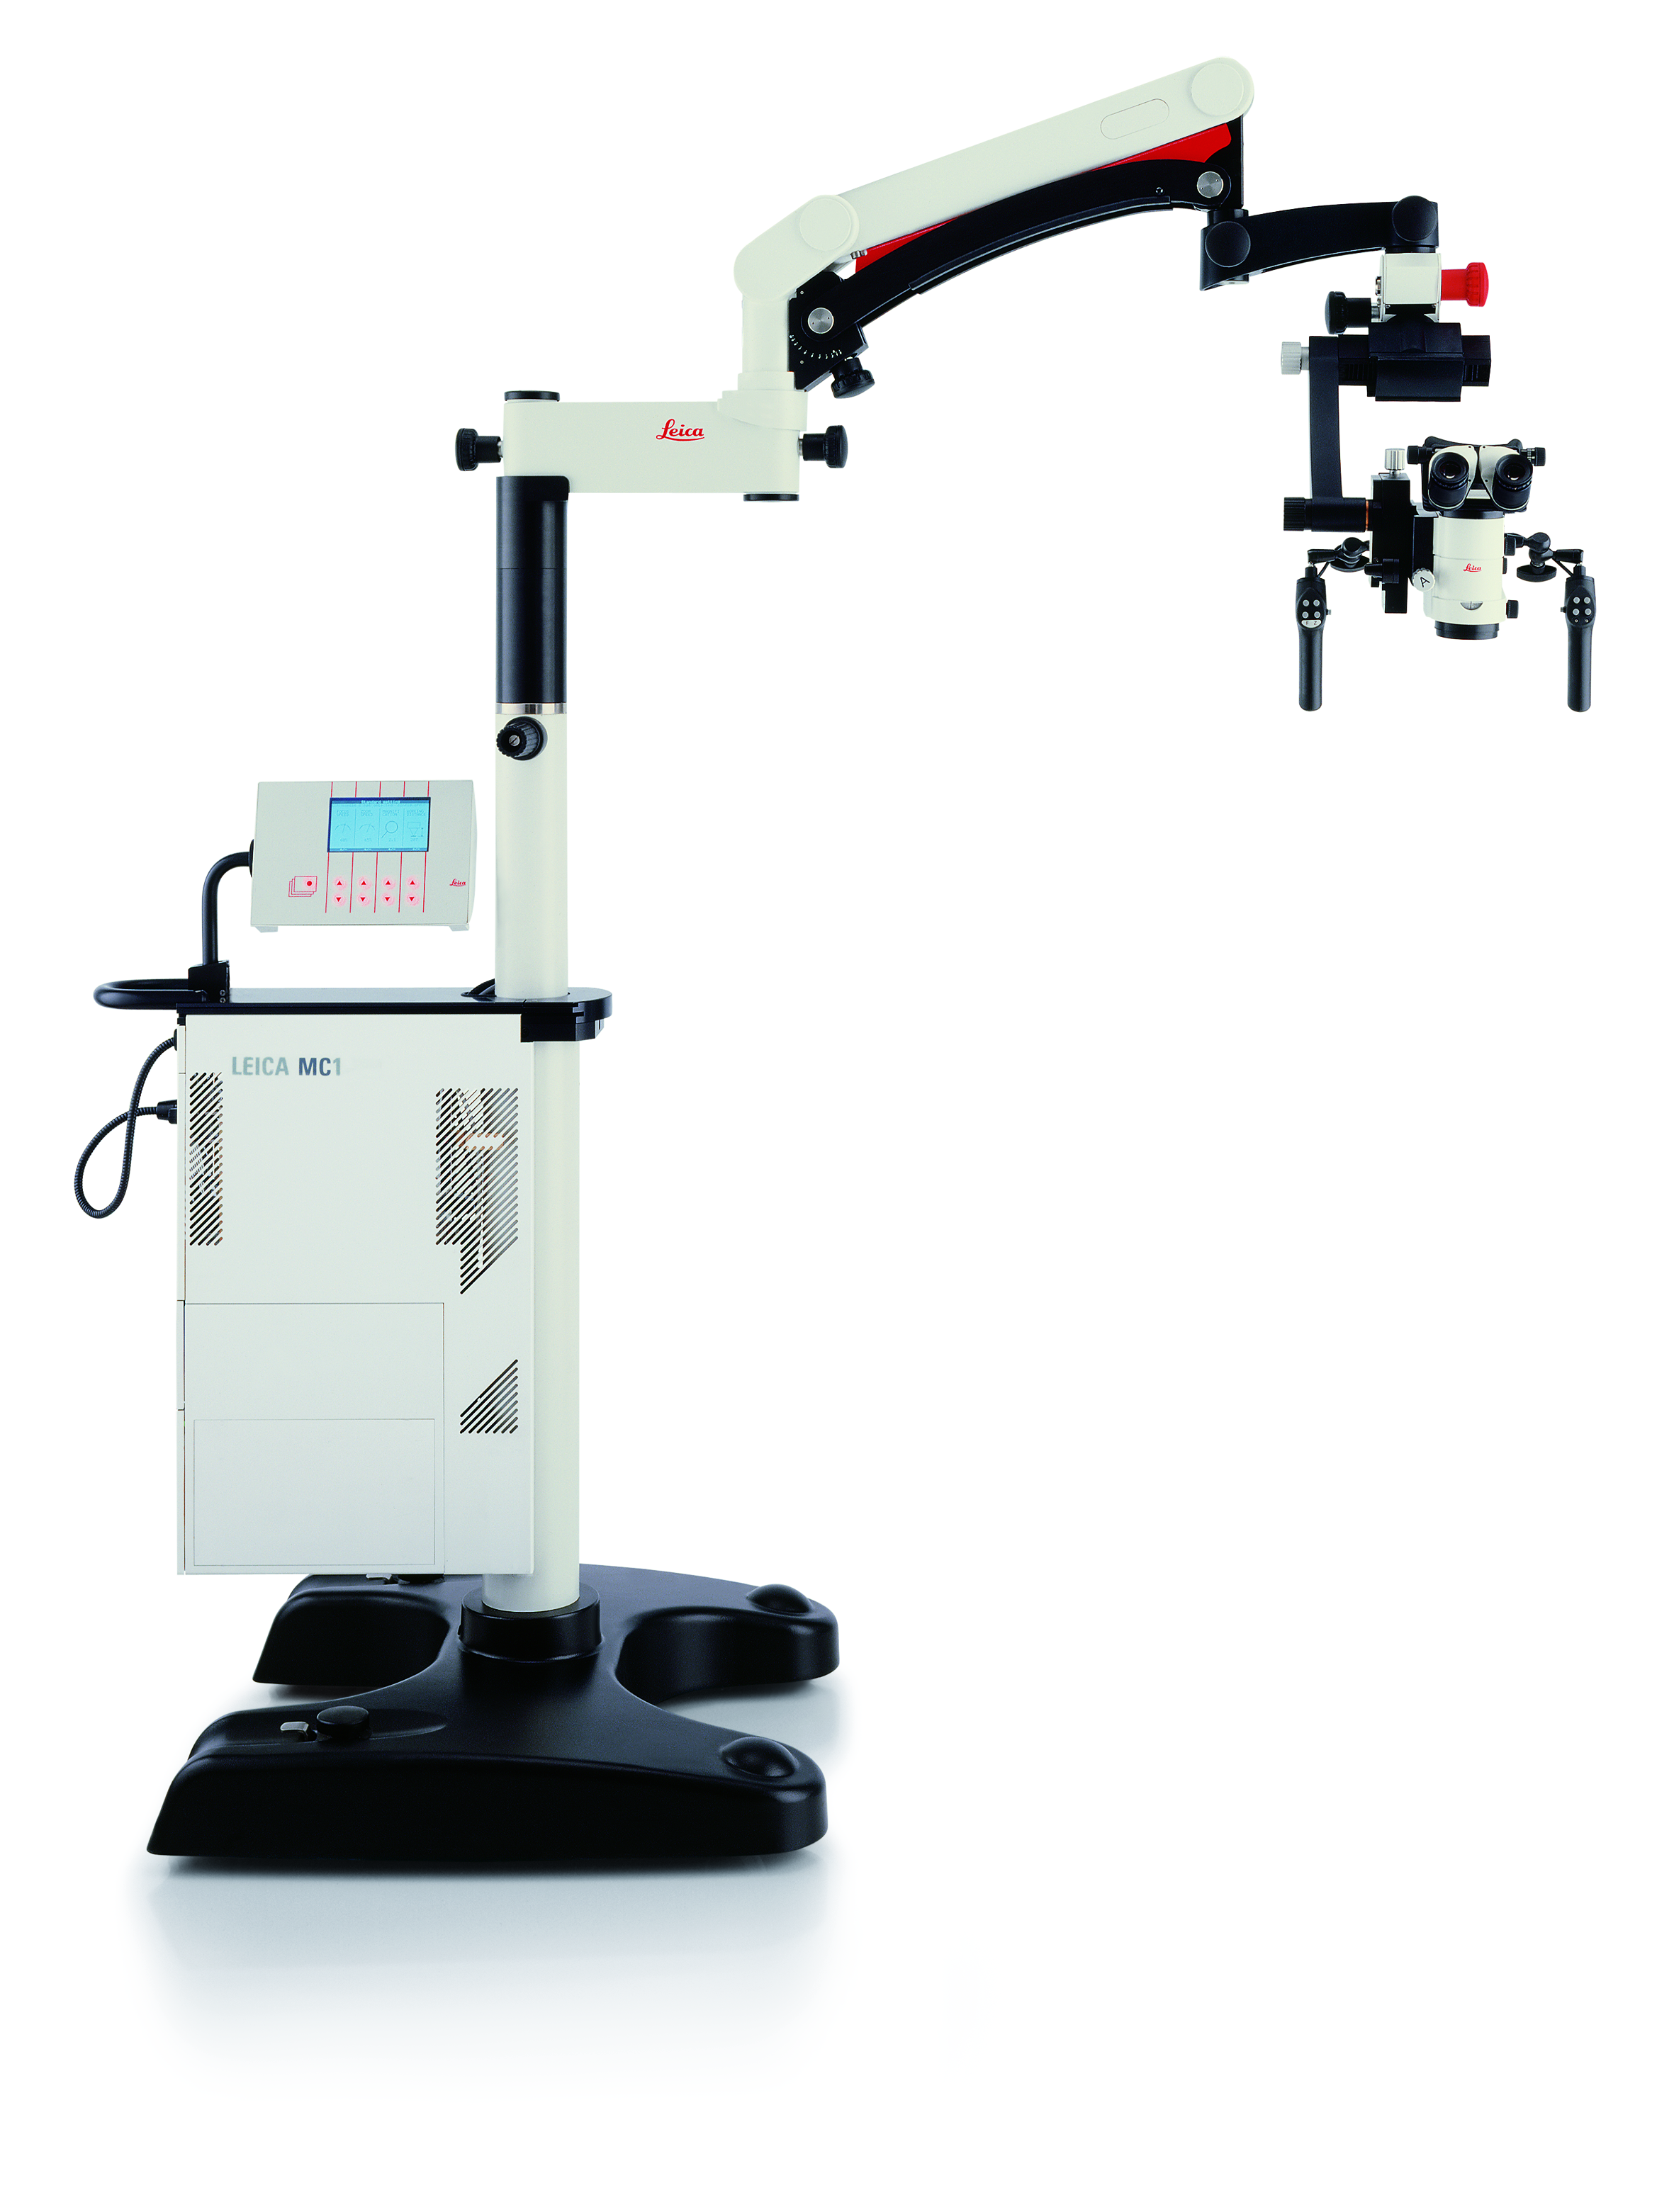 Soluzione di microscopio chirurgico Leica M525 MC1 per neurochirurgia e chirurgia ORL.